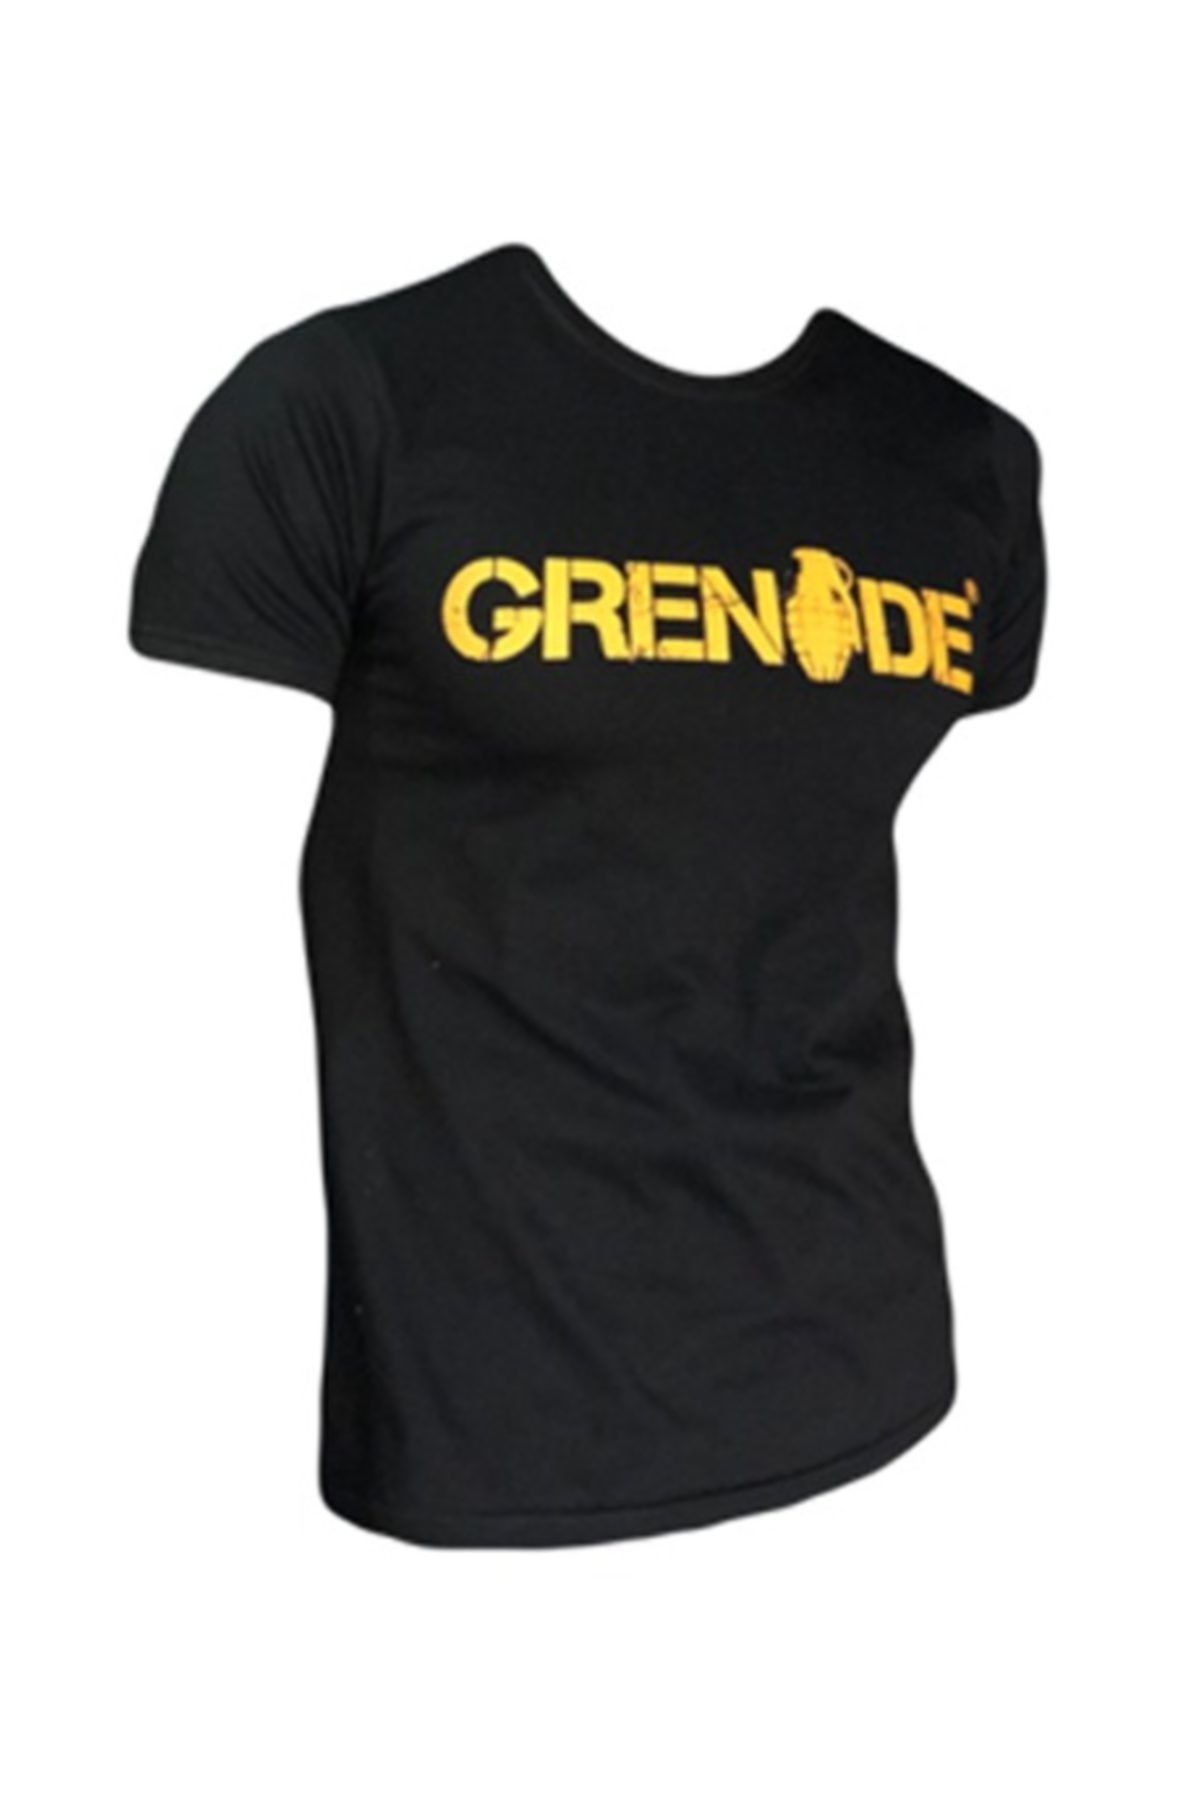 Grenade Kısa Kollu T-shirt - Siyah Renk - Beden - M